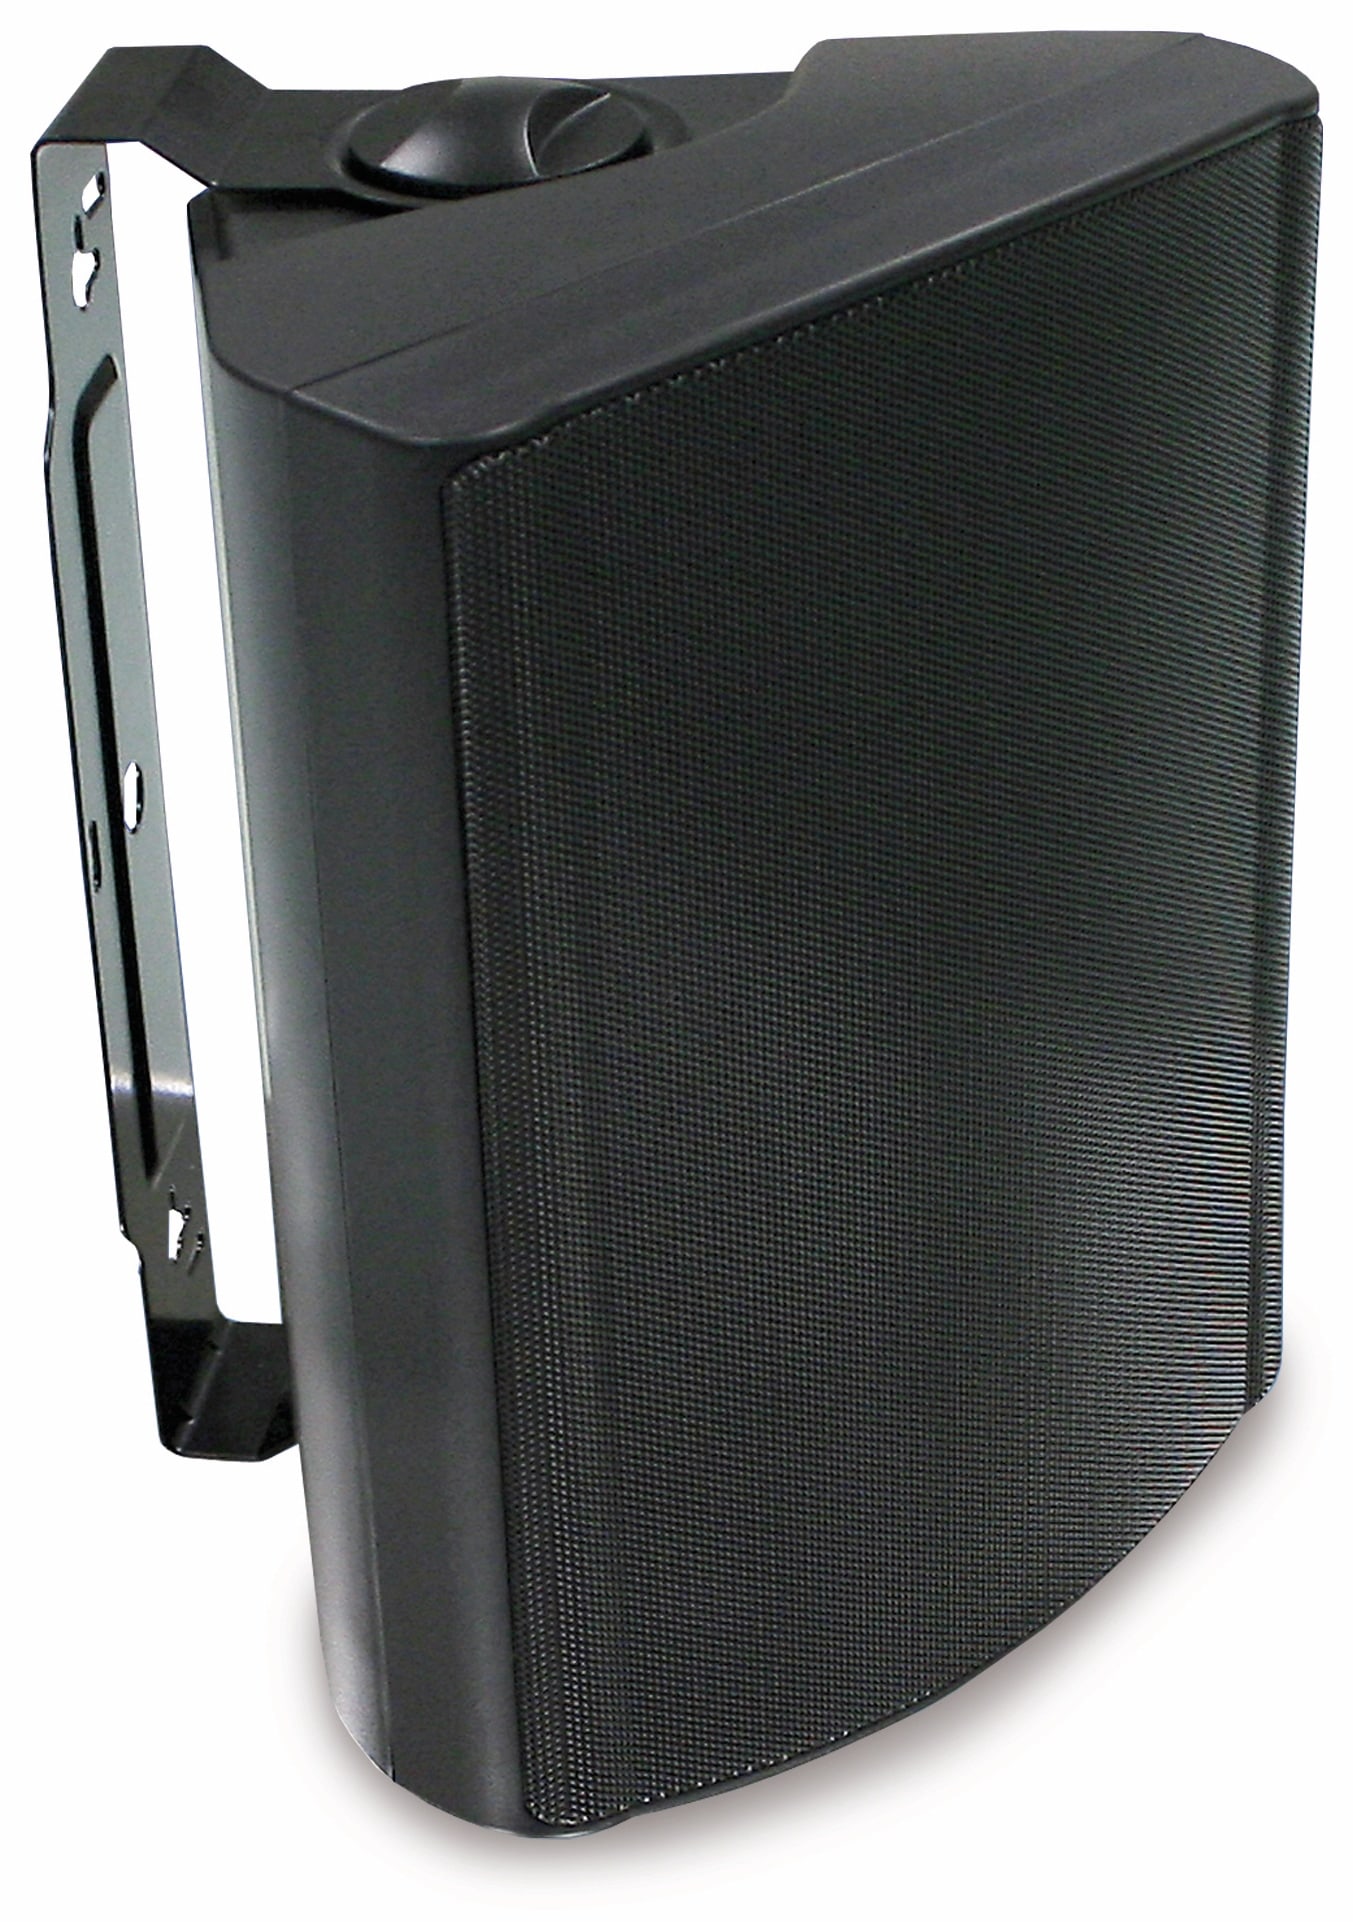 Visaton Lautsprecherbox WB 16, schwarz, 100 V, 8 Ohm